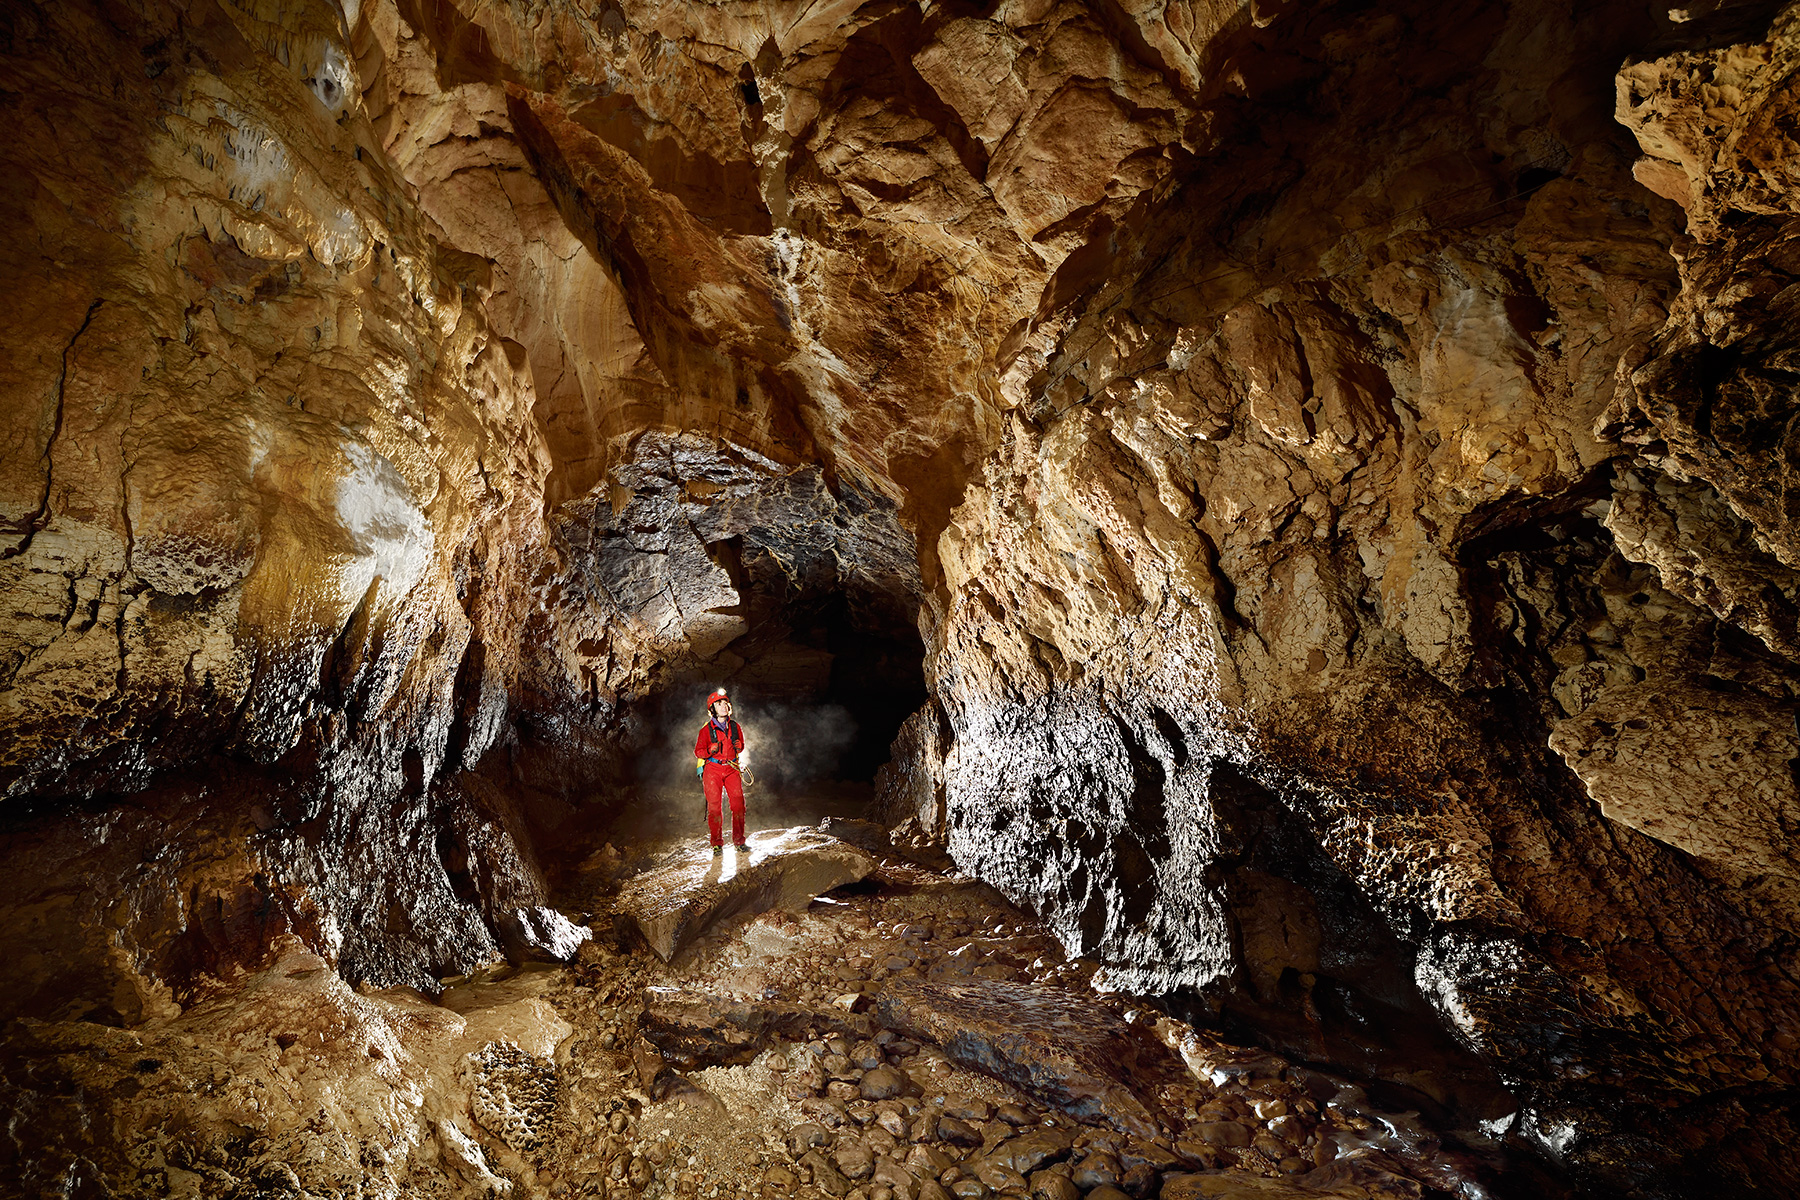 Grotte de Vallorbe (Suisse) - La rivière souterraine s'écoule dans cette galerie lors des crues. Les dépôts noirs, d'origine biologique, indiquent le niveau de l'eau lors de ces épisodes.